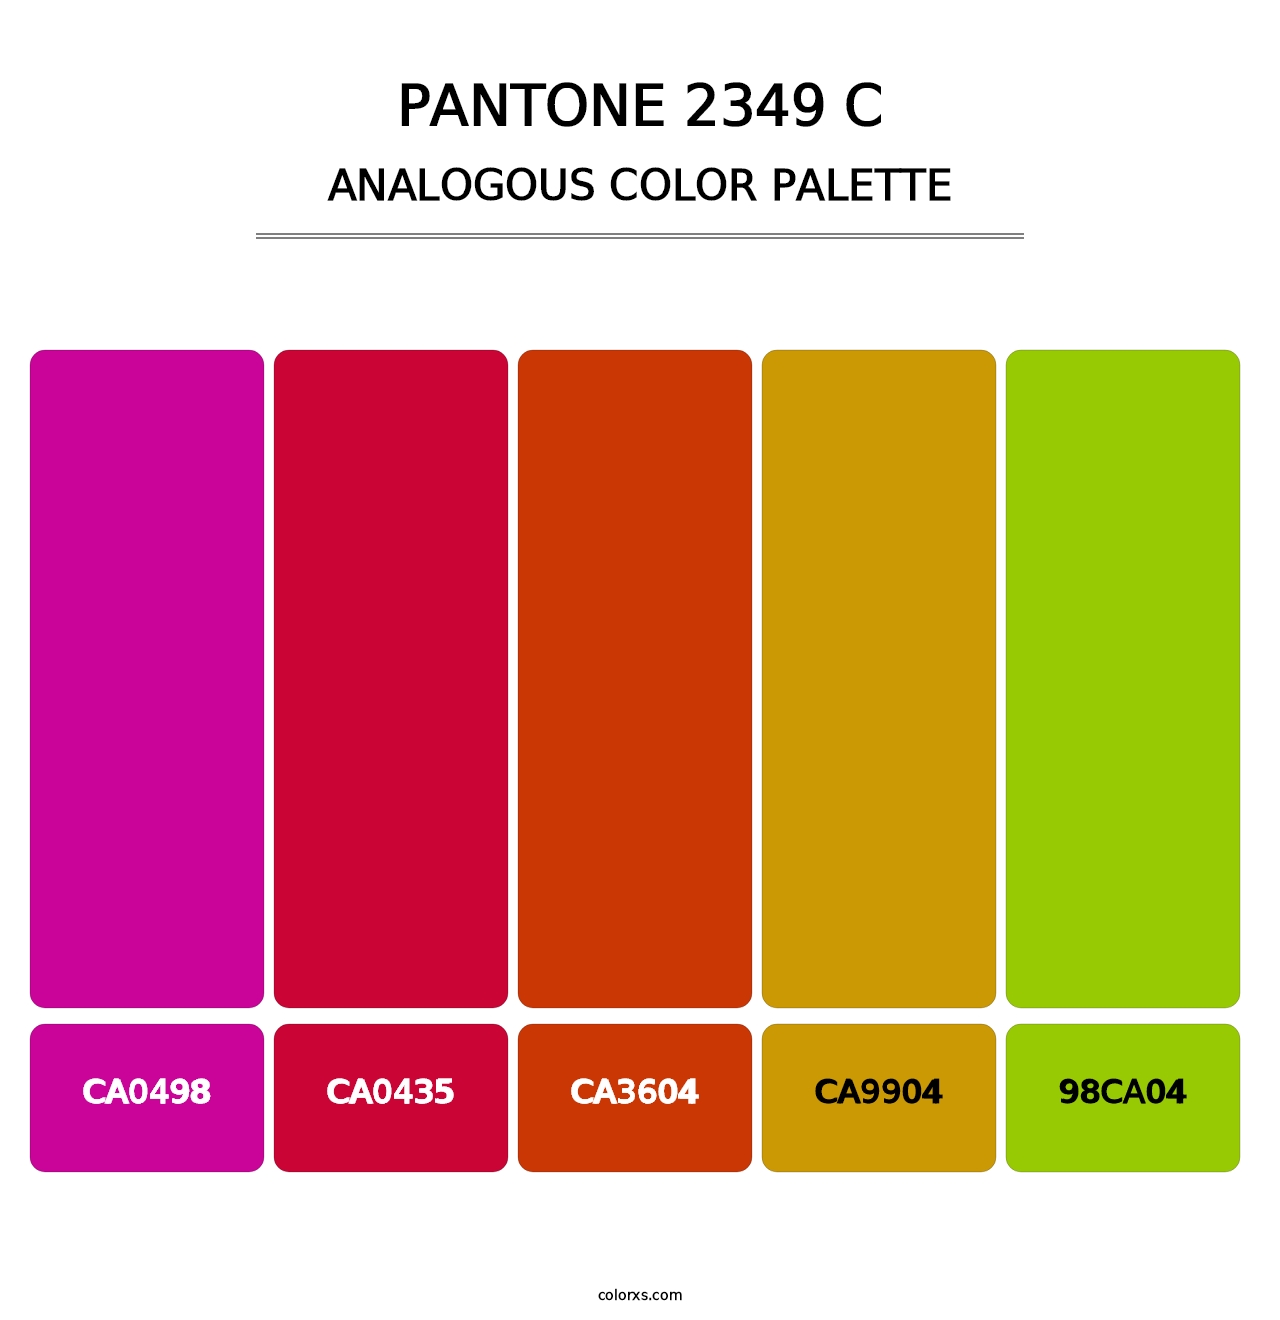 PANTONE 2349 C - Analogous Color Palette